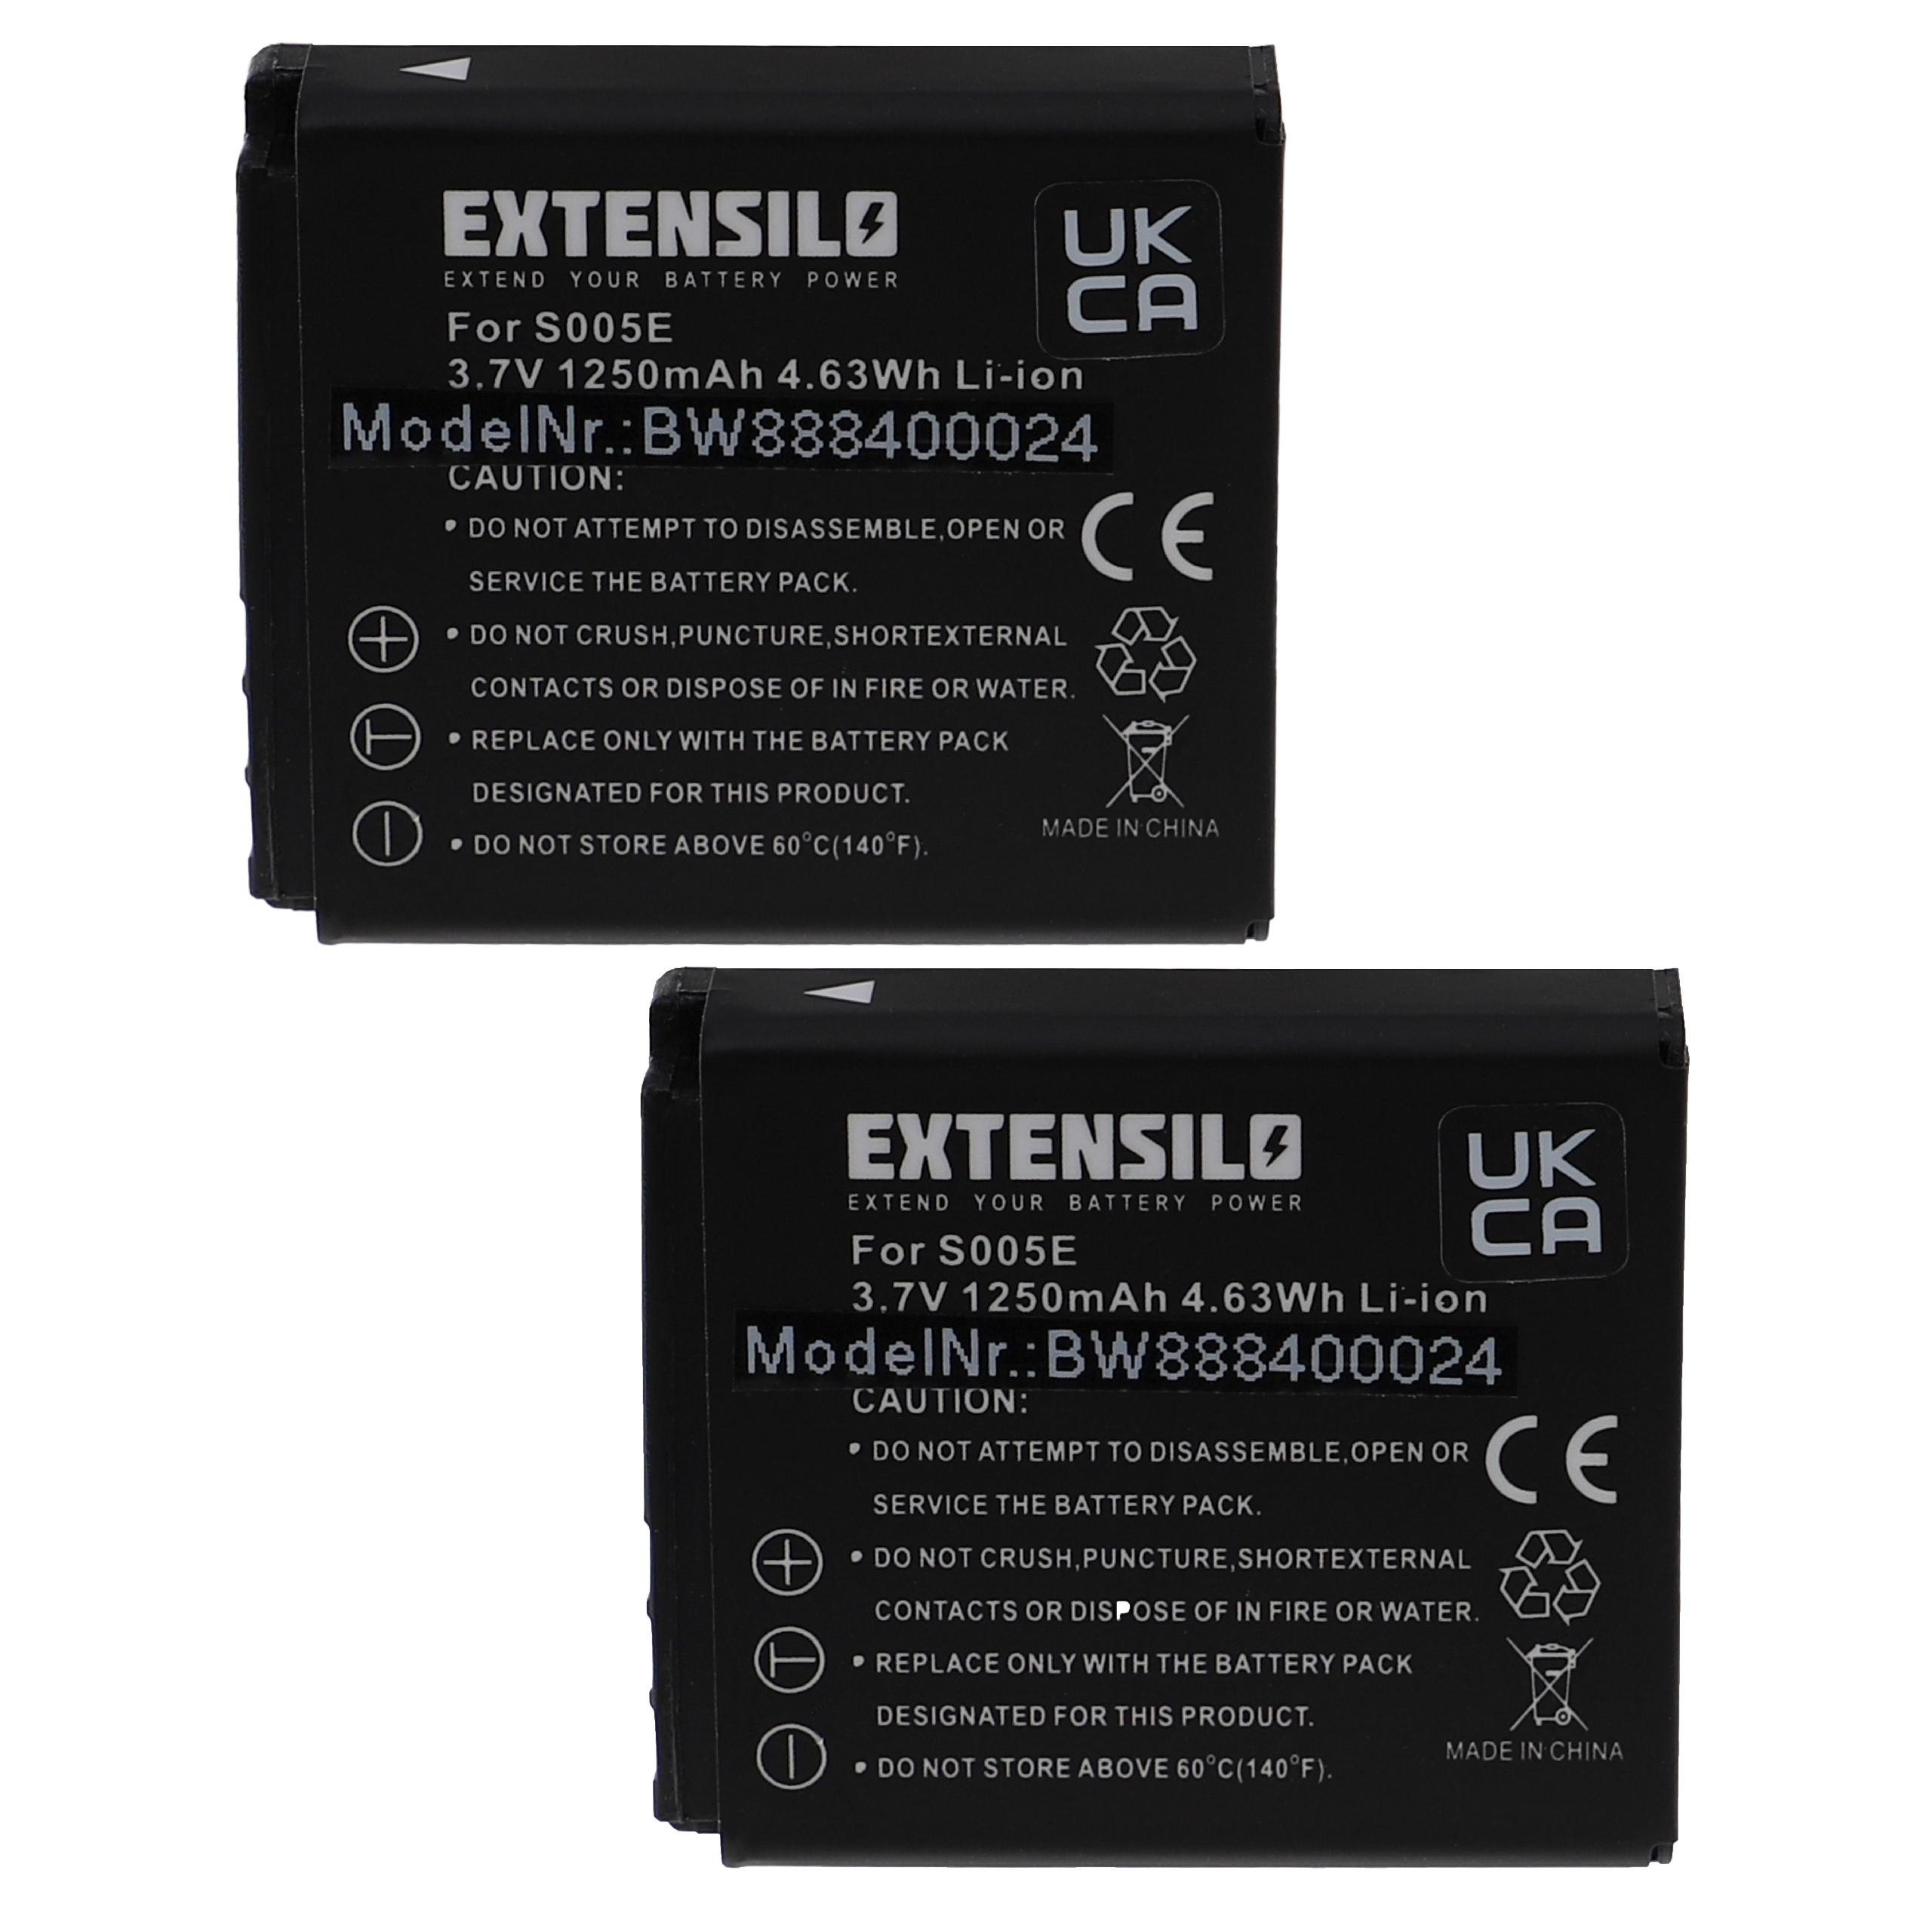 EXTENSILO kompatibel mit DMC-FX150, DMC-FX100, DMC-FX07, 1250 Li-Ion 3.7 DMC-FX12, Volt, Panasonic DMC-FX01 - Kamera, Lumix Akku DMC-FX10